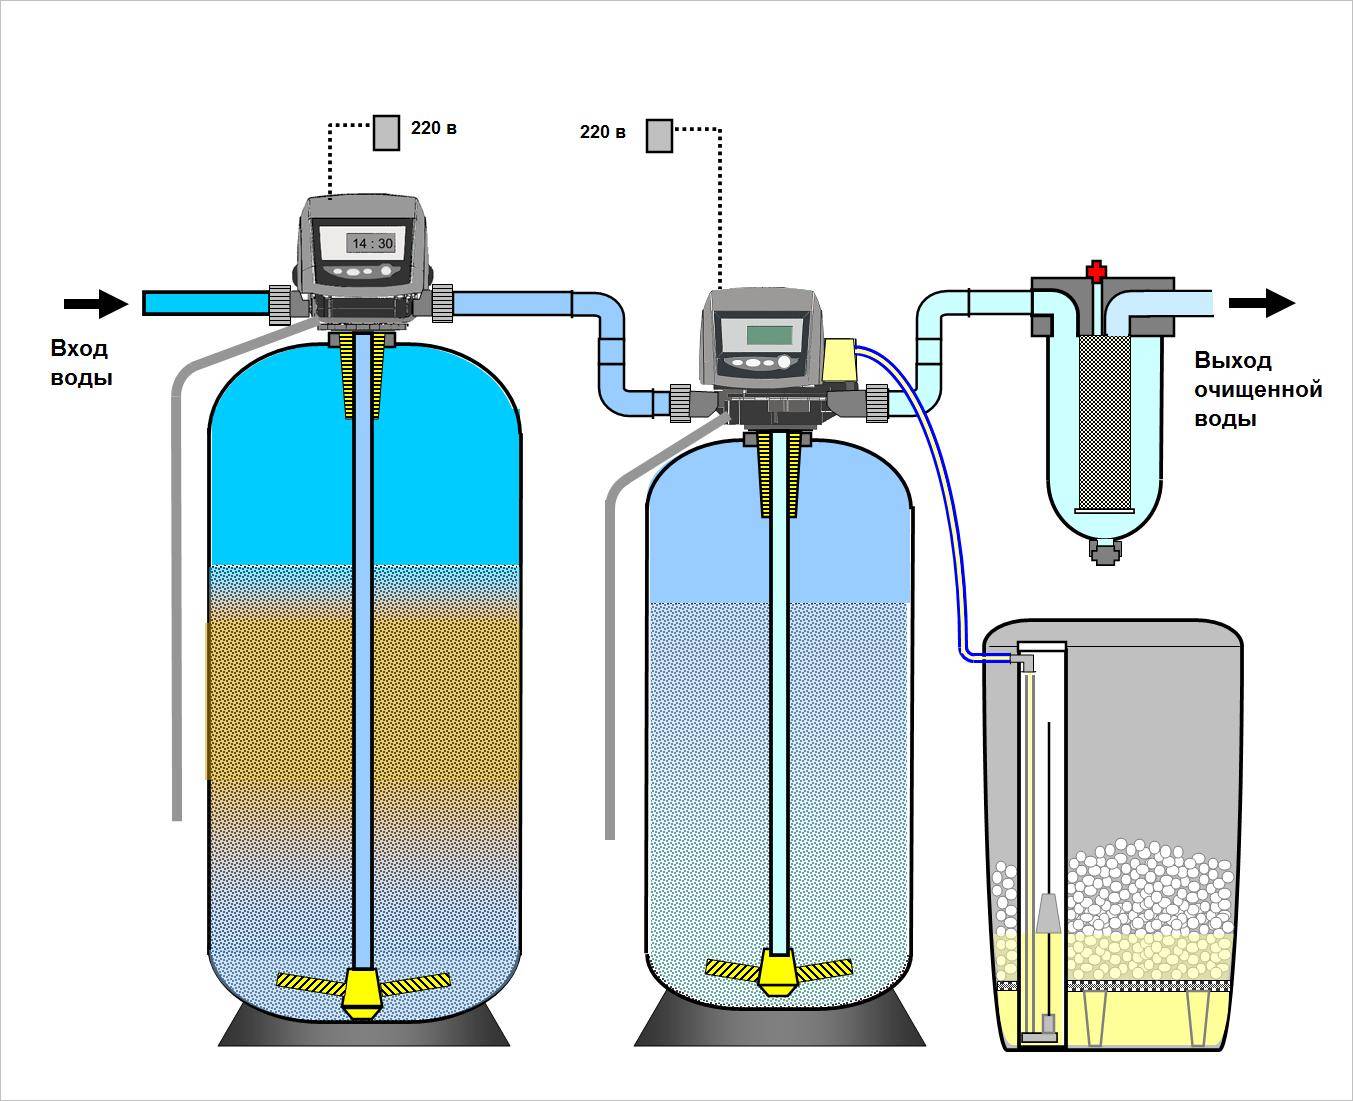 Как сделаем водоподготовку воды из скважины своими руками для частного дома? обзор и советы +видео